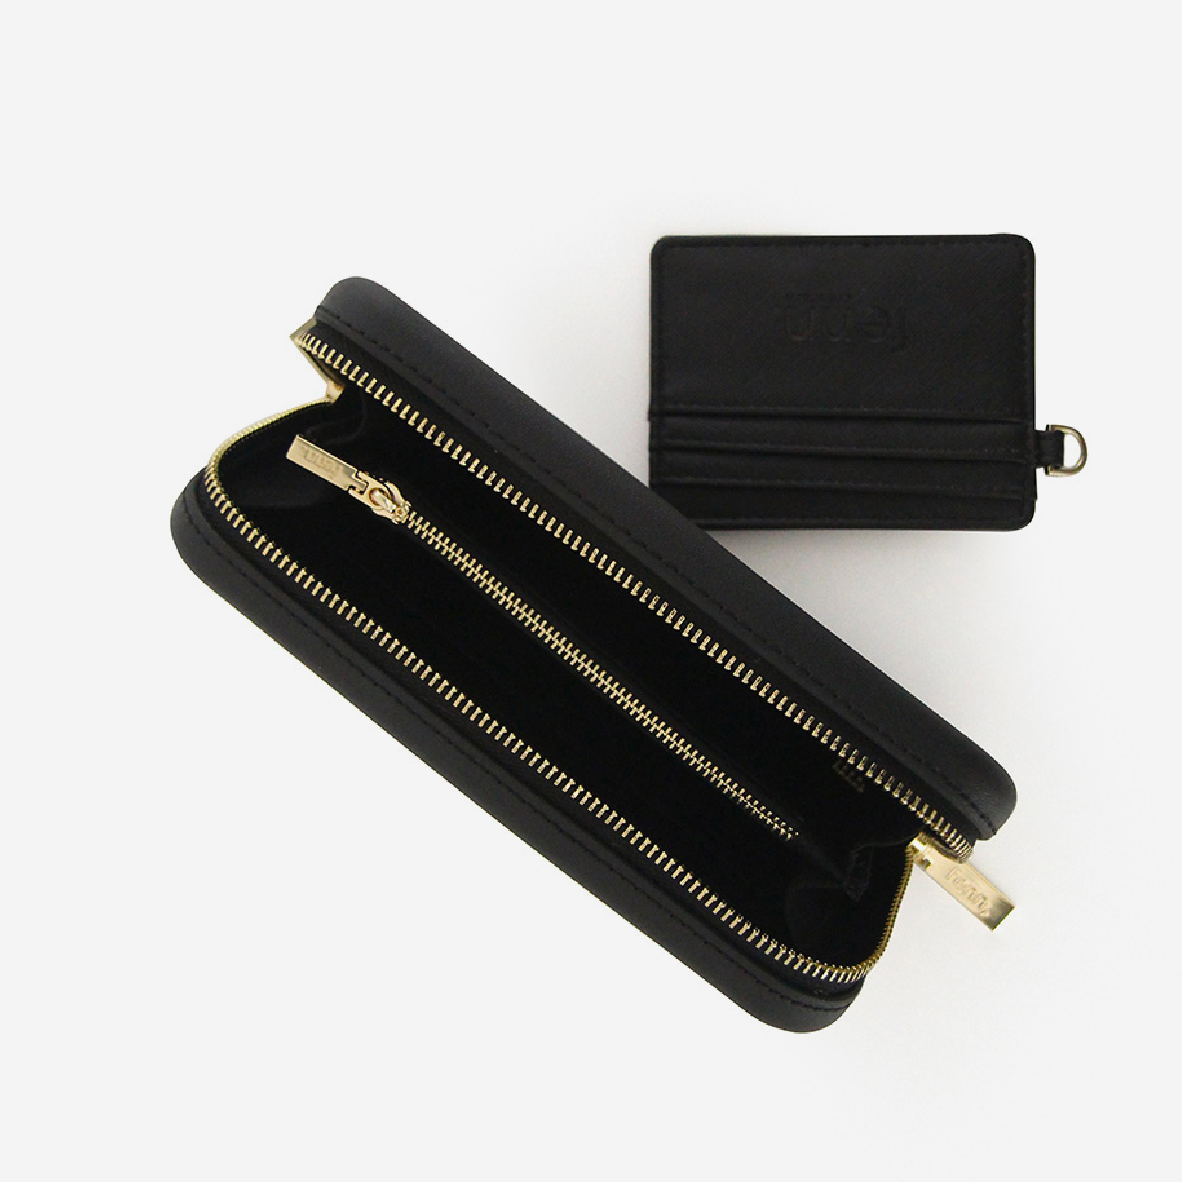 Original Wallet With Zip - Black